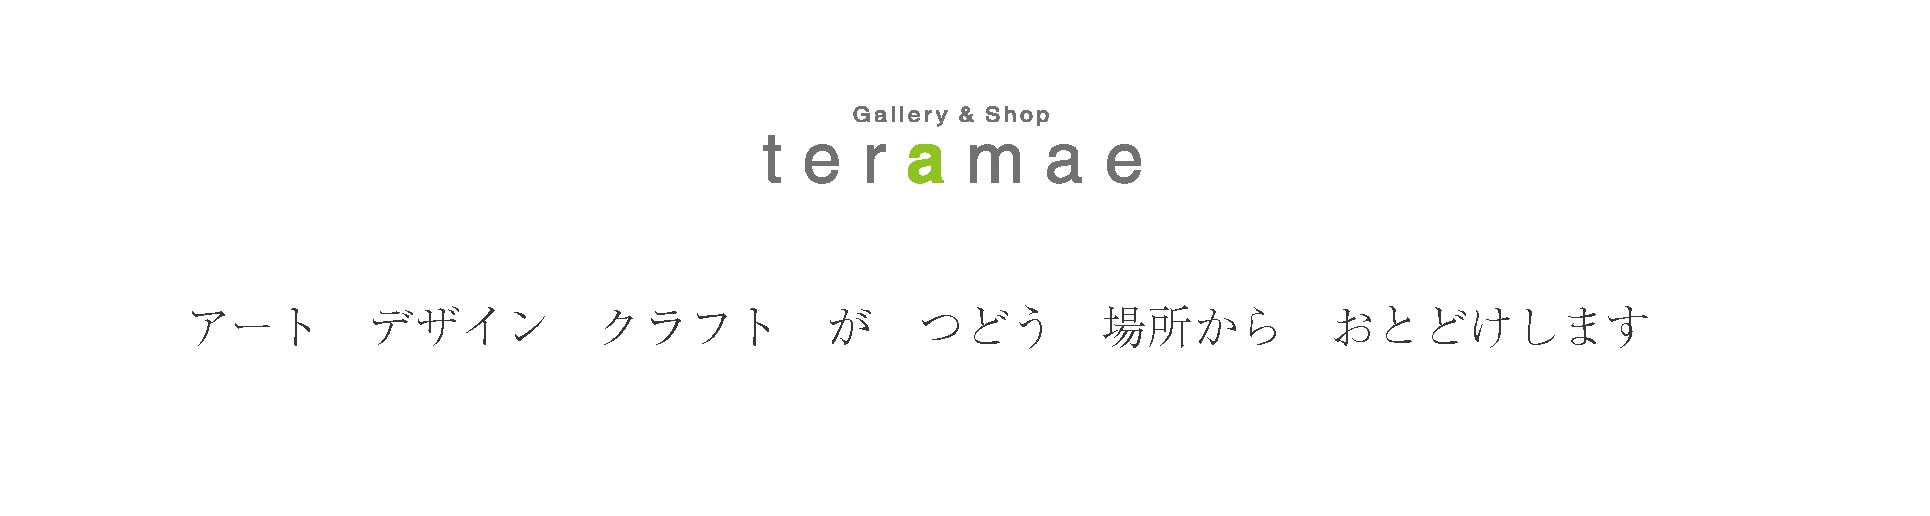 gallery&shop teramae